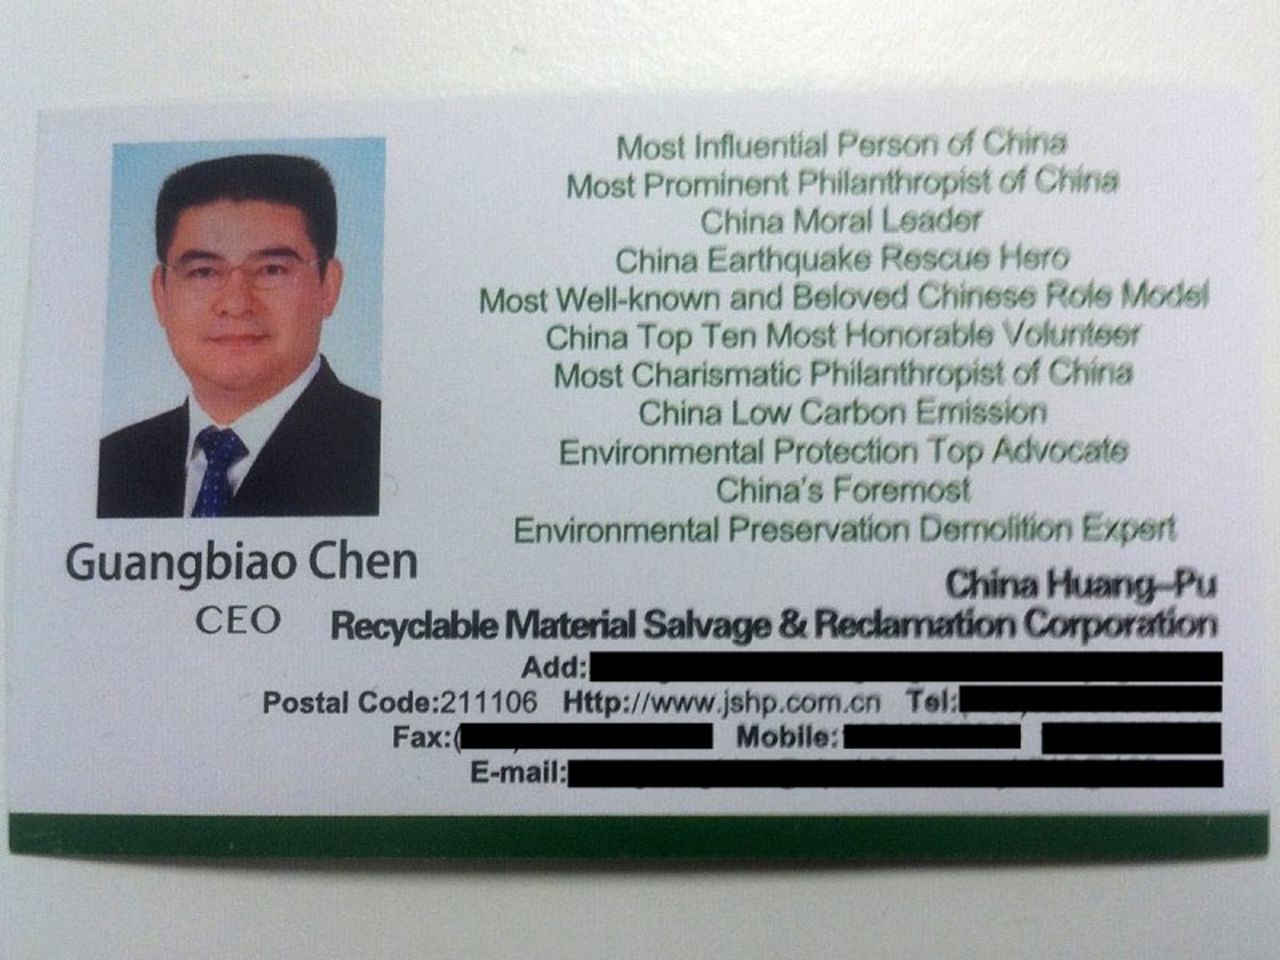 Chen Guangbiao's namecard.